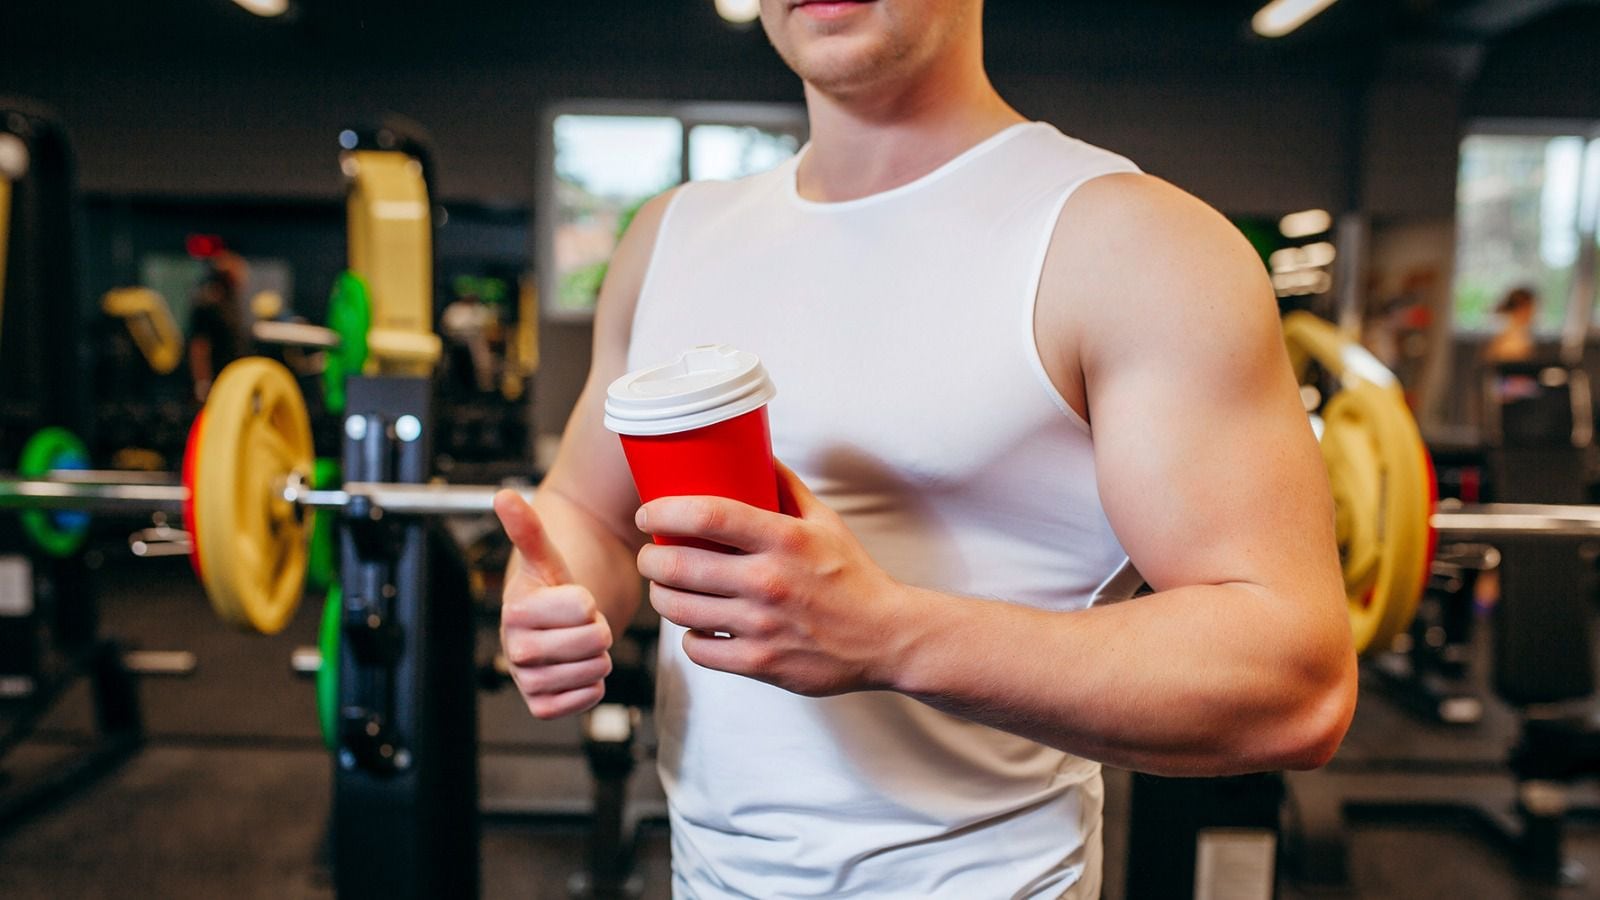 Beber café antes de hacer ejercicio puede traer efectos positivos a tu entrenamiento. (Foto: Shutterstock)